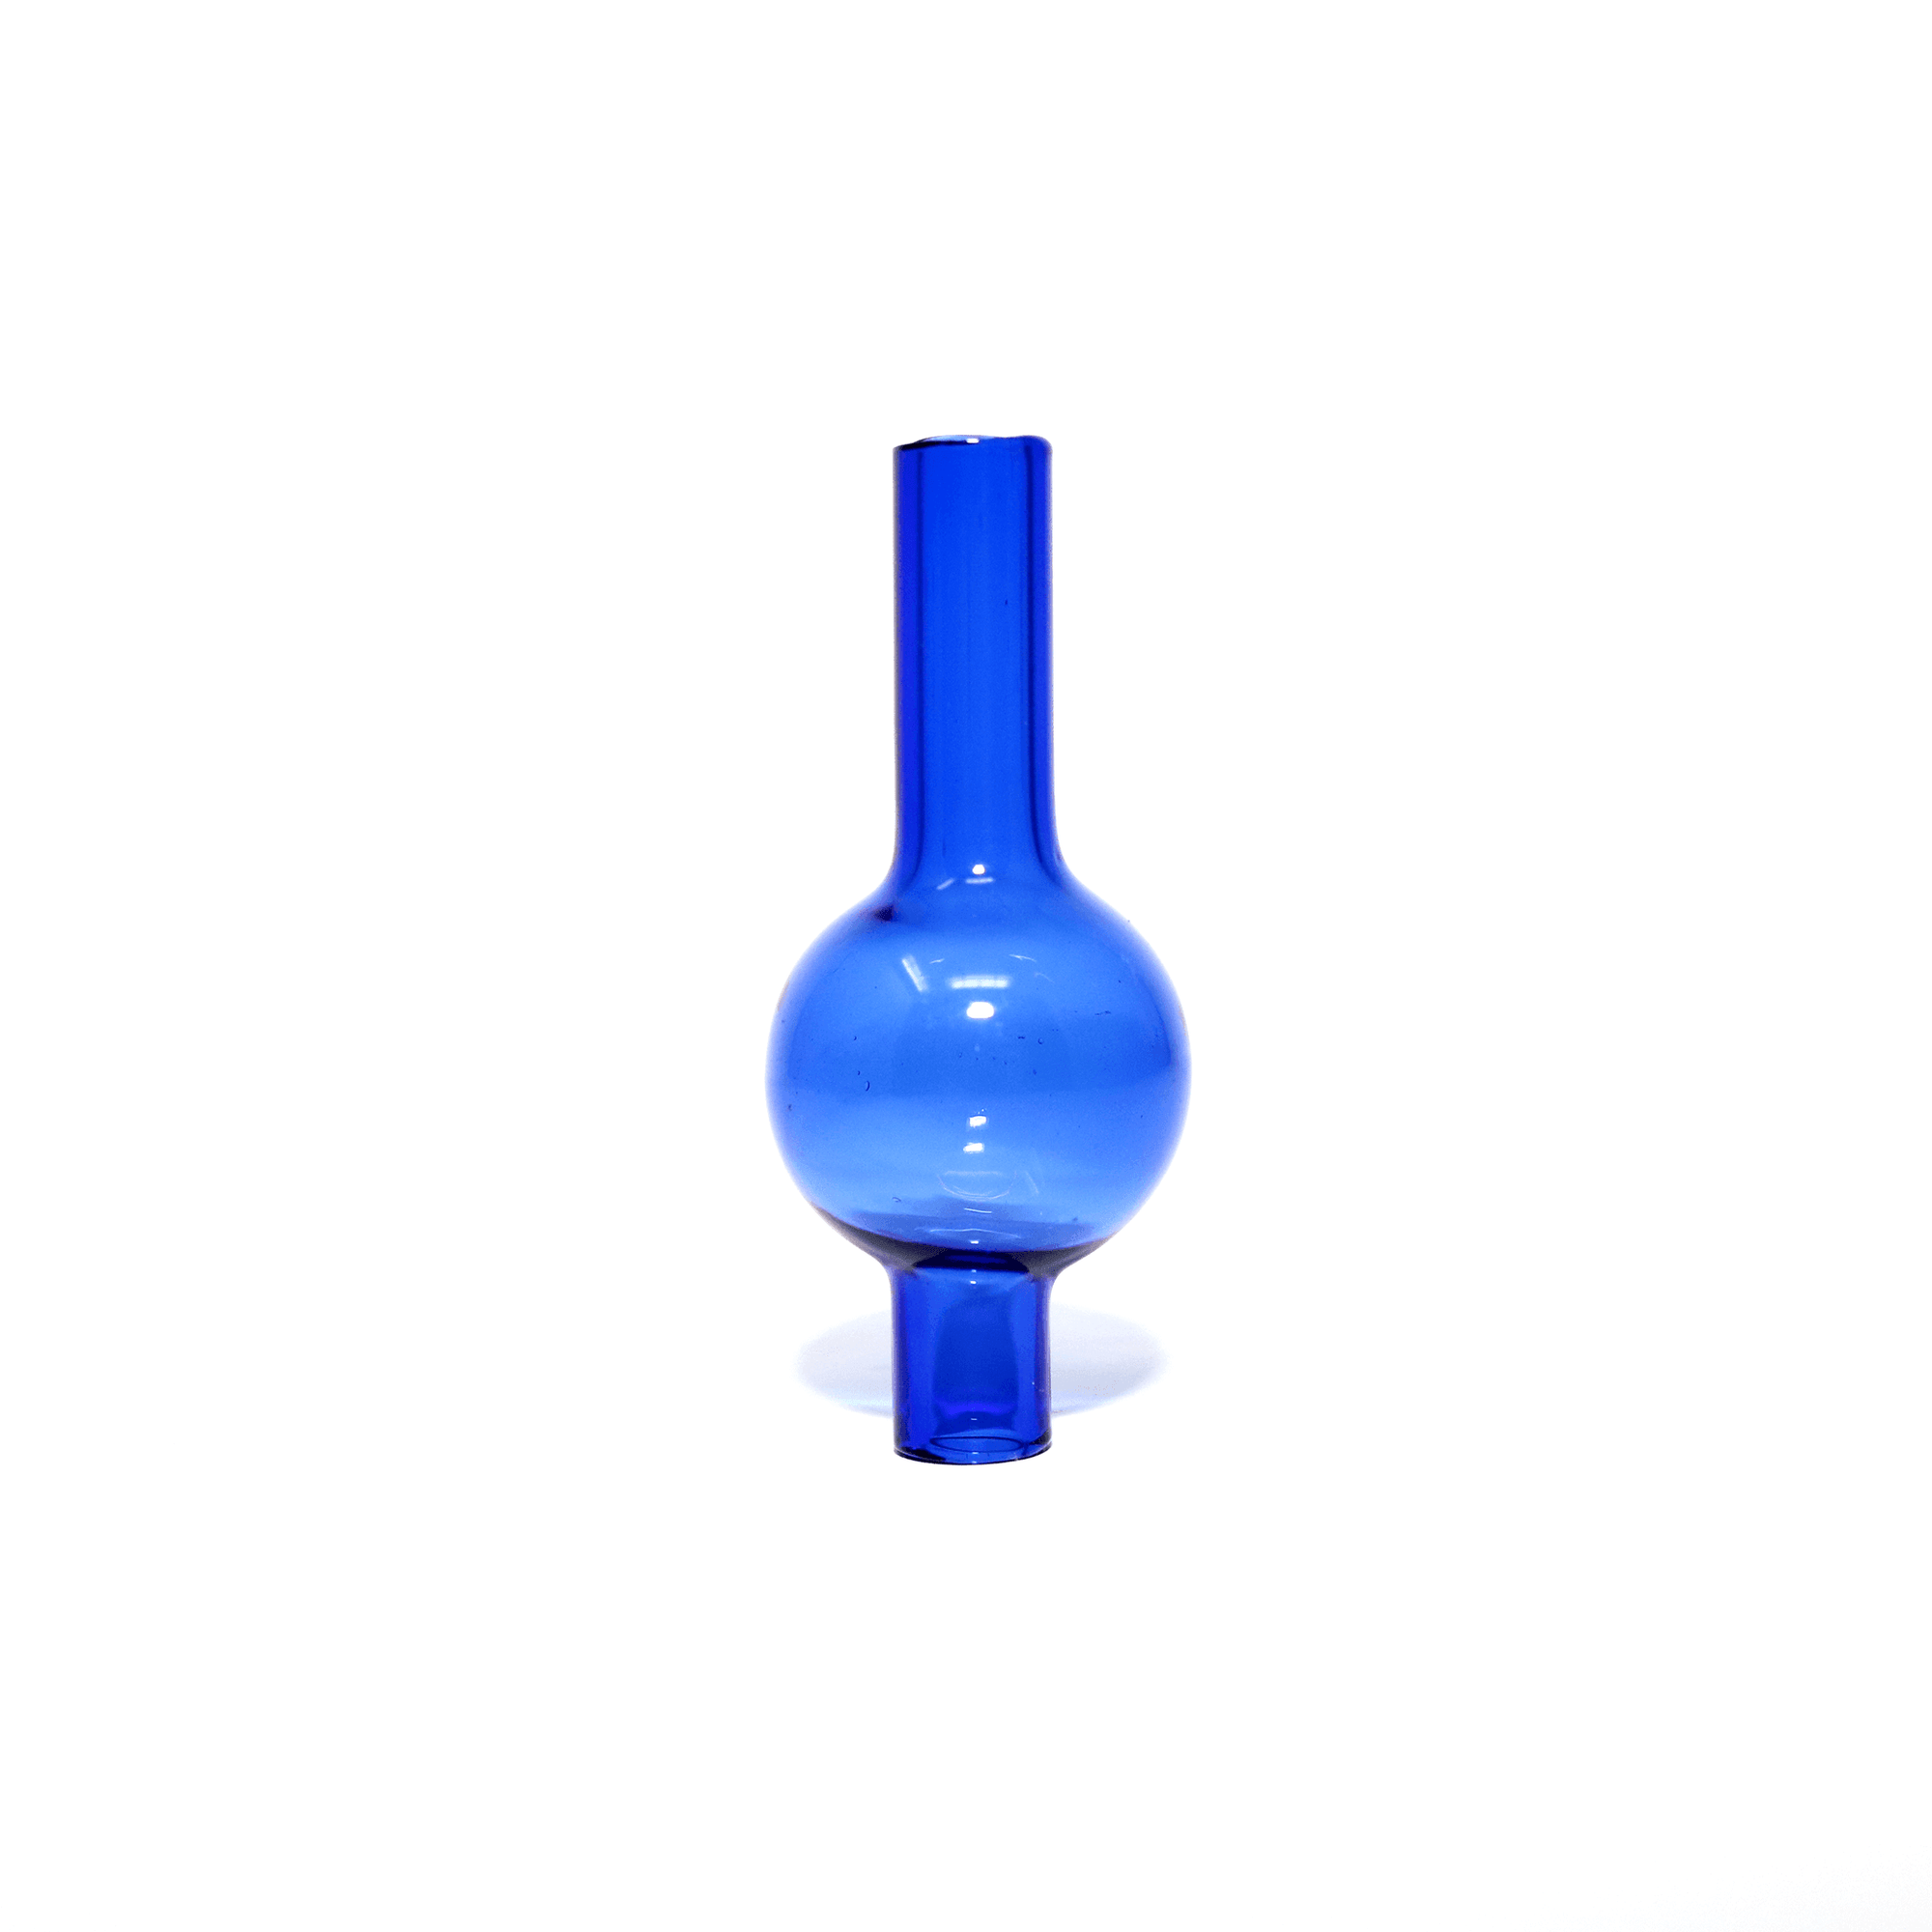 Glass Dab Rig | Mini Dual Bubbler | Double Wall Quartz Banger | Bubble Carb Cap Profile View | DW